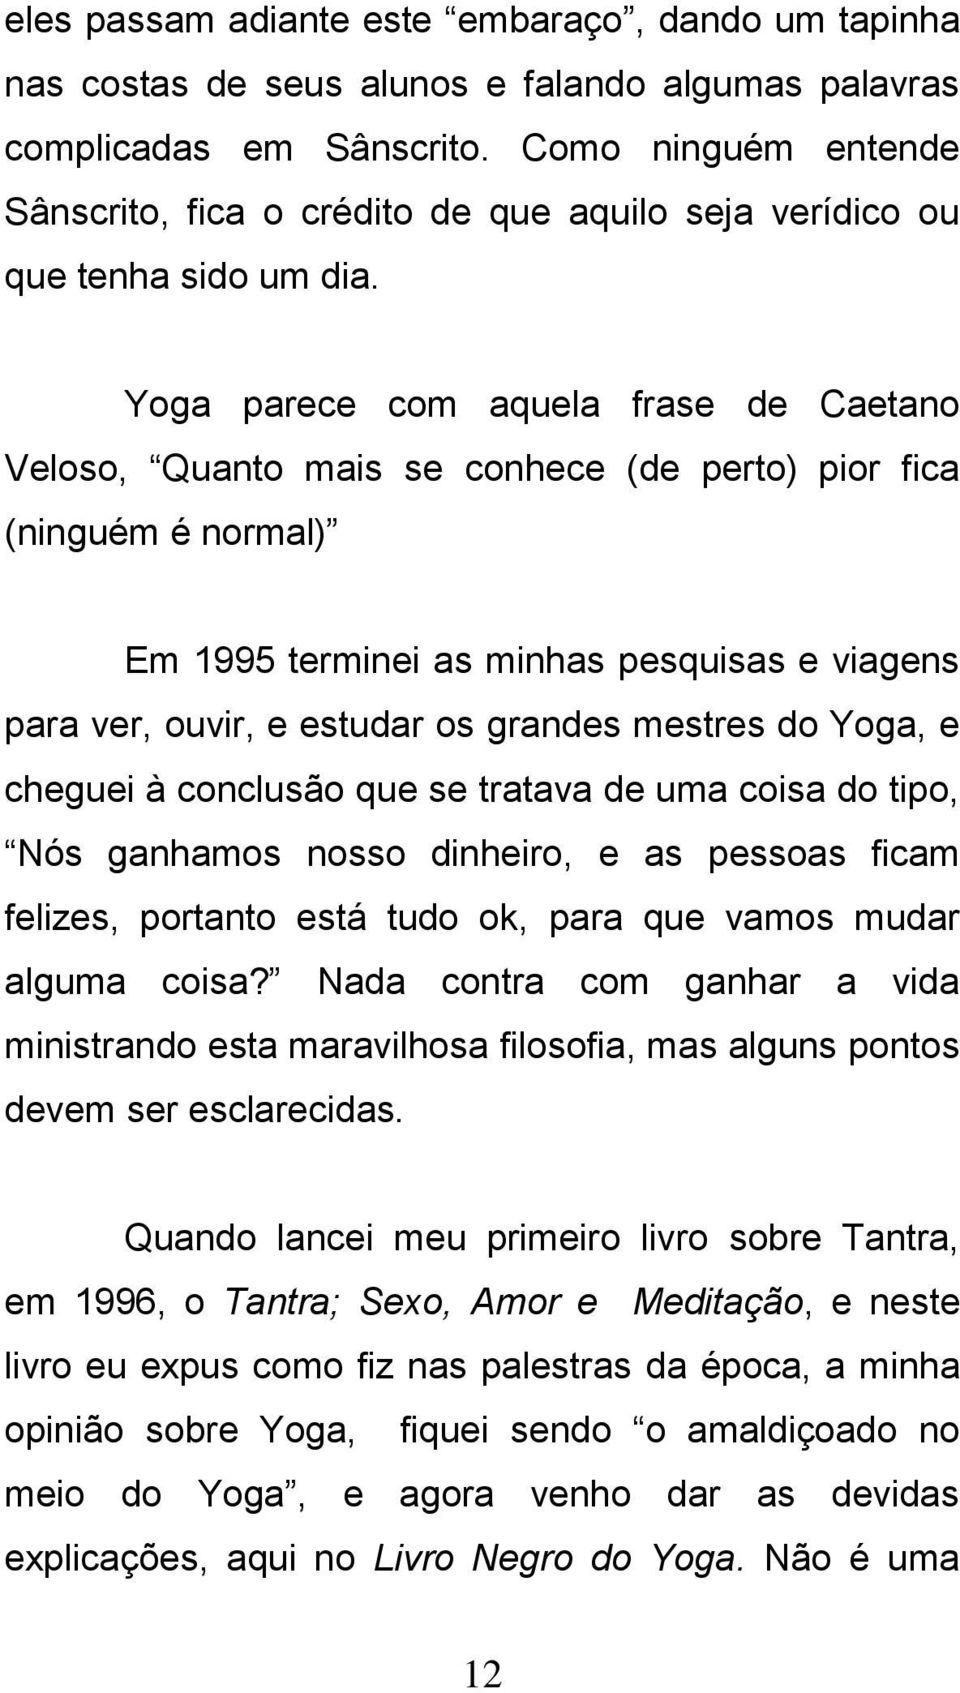 Yoga parece com aquela frase de Caetano Veloso, Quanto mais se conhece (de perto) pior fica (ninguém é normal) Em 1995 terminei as minhas pesquisas e viagens para ver, ouvir, e estudar os grandes